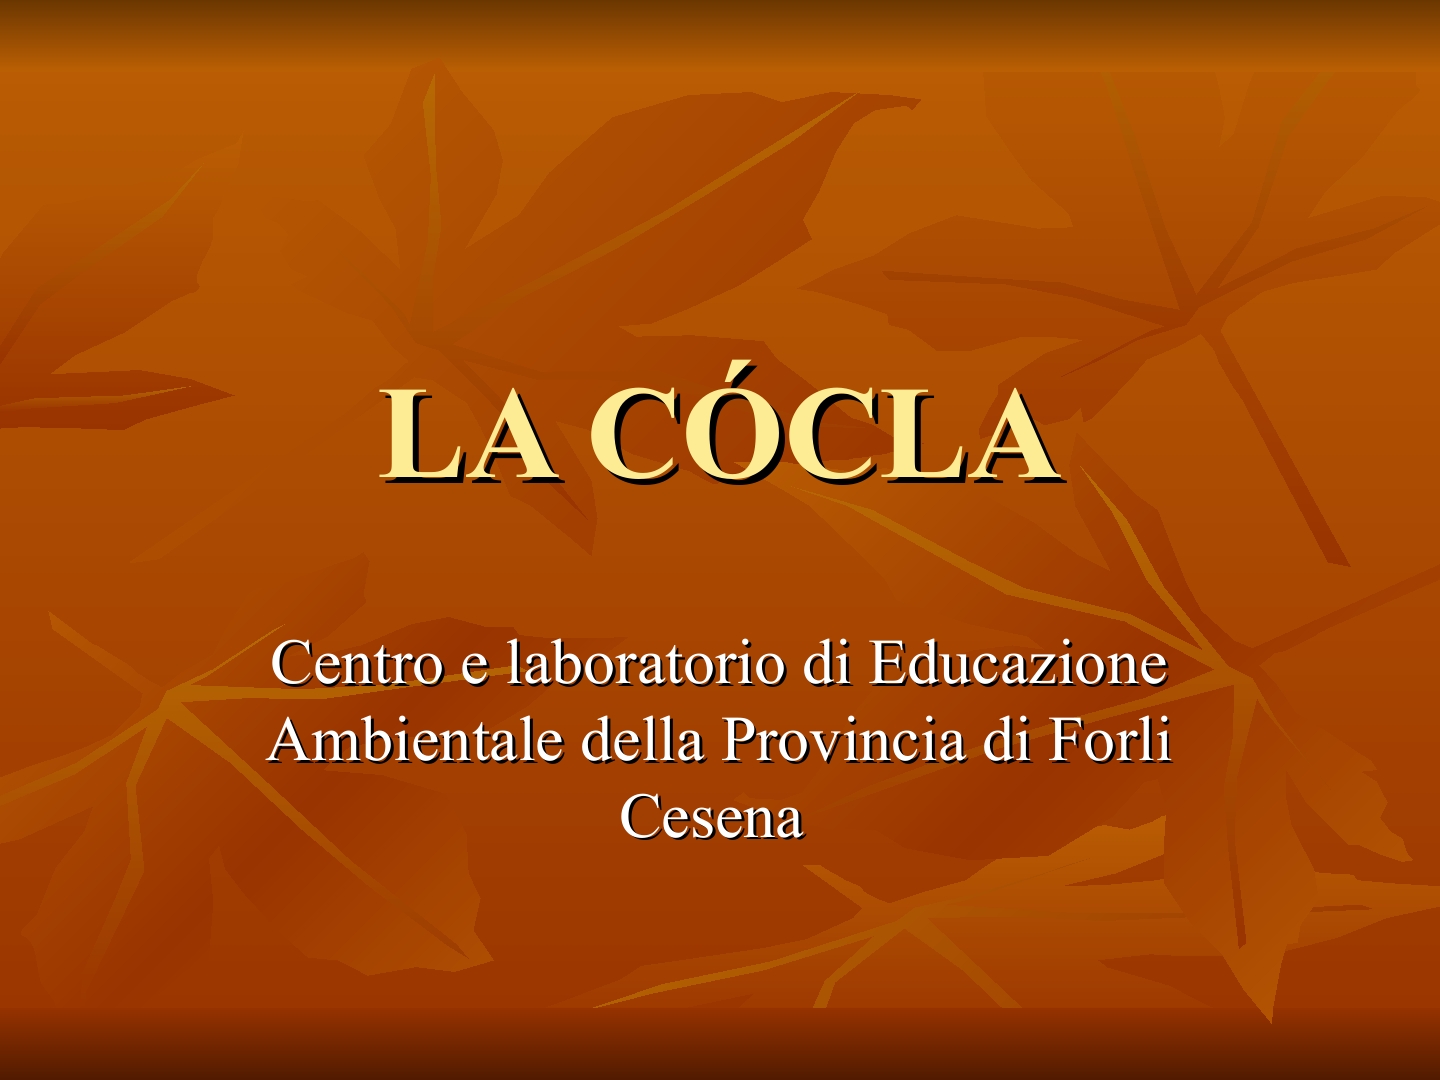 Presentazione-giardino-della-Cocla1